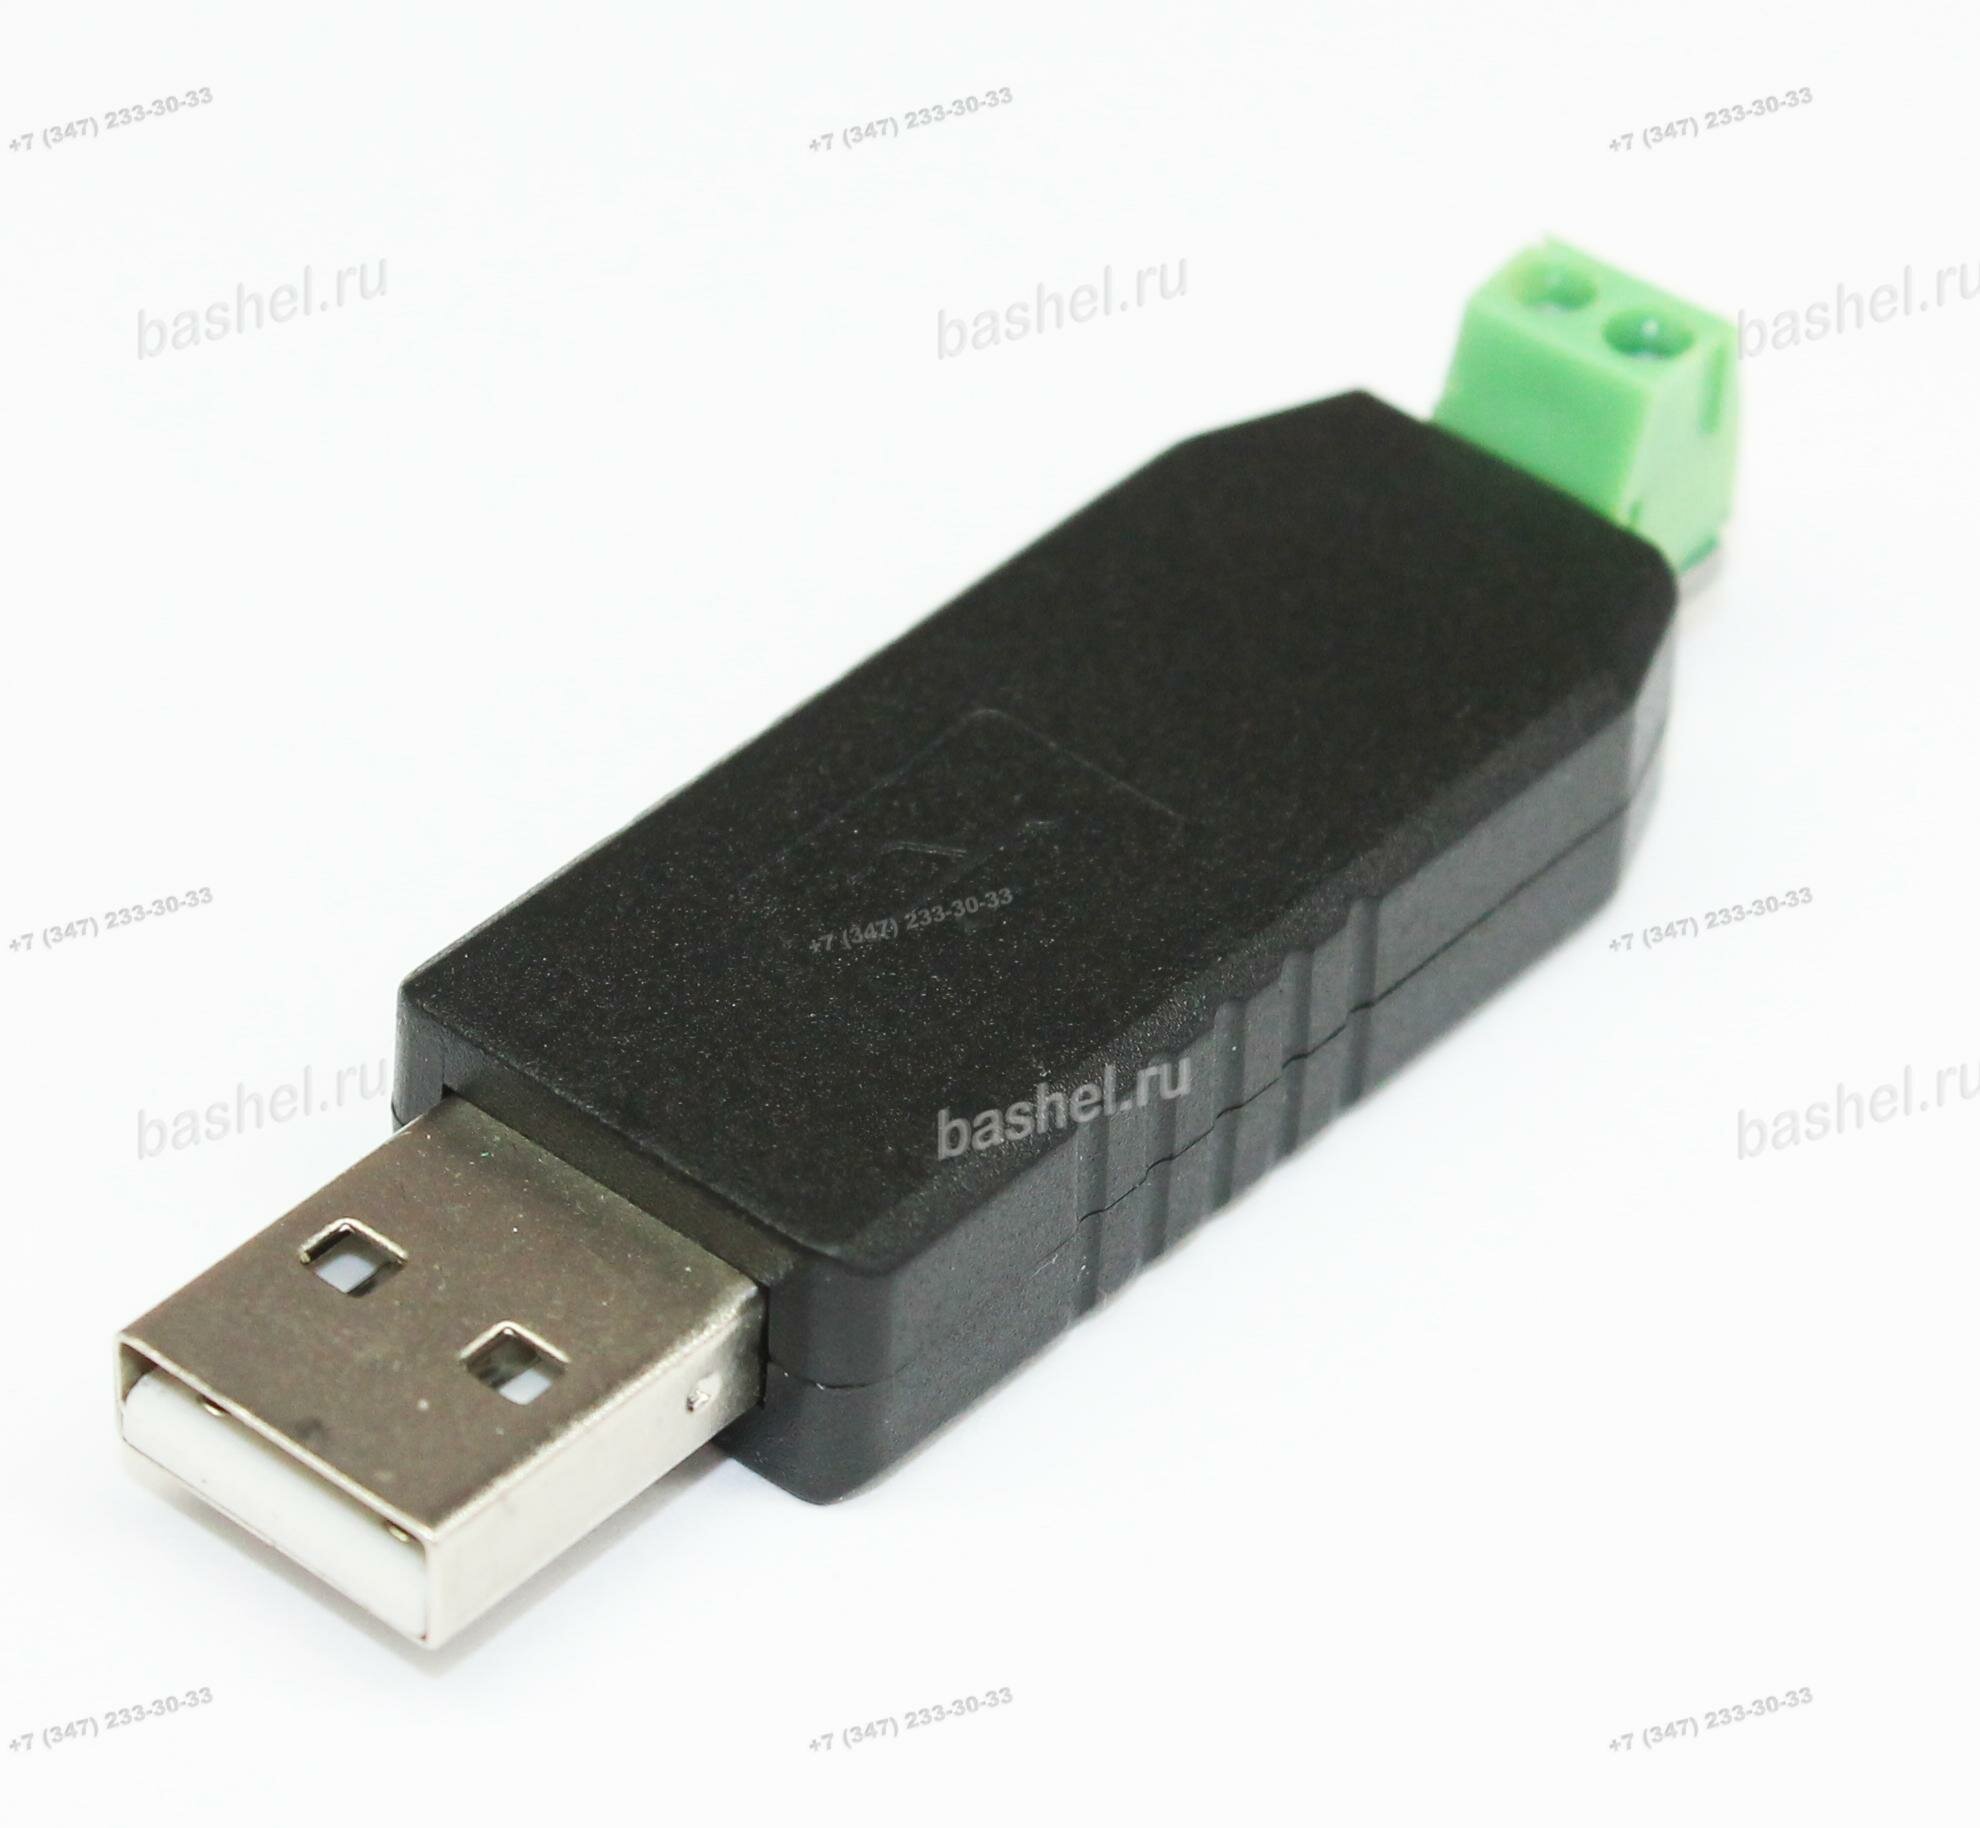 USB to RS485 Converter Adaptor, Адаптер интерфейсный электротовар